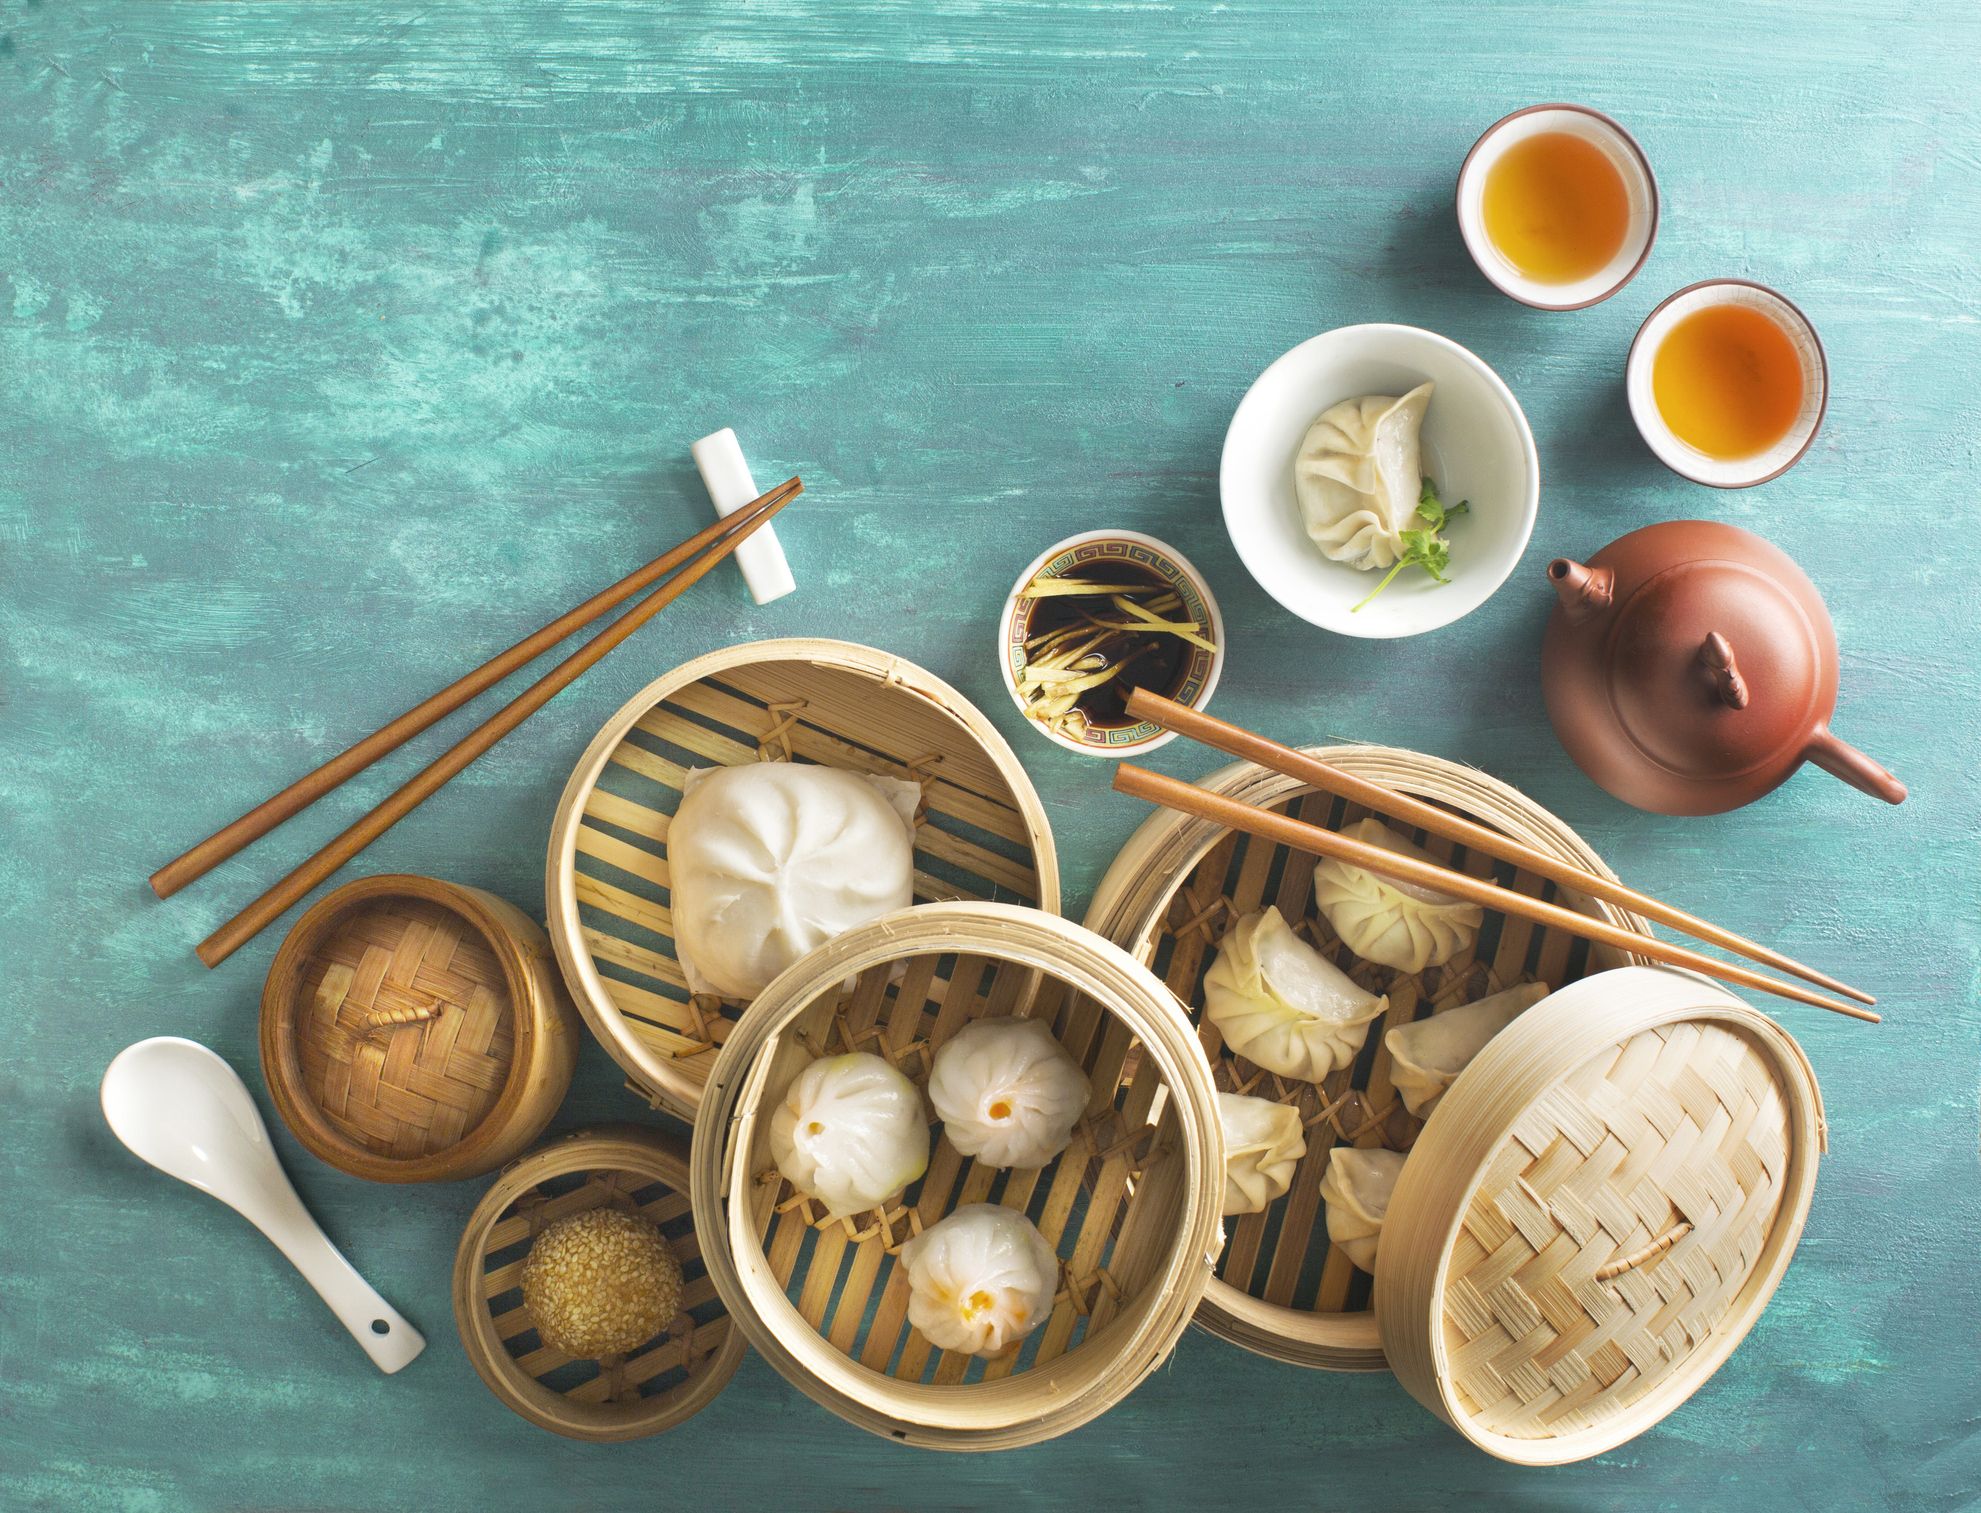 Ravioli Cinesi al vapore, alla piastra e ravioli bolliti - Dumpling fatti  in casa con ricetta semplice e gustosa